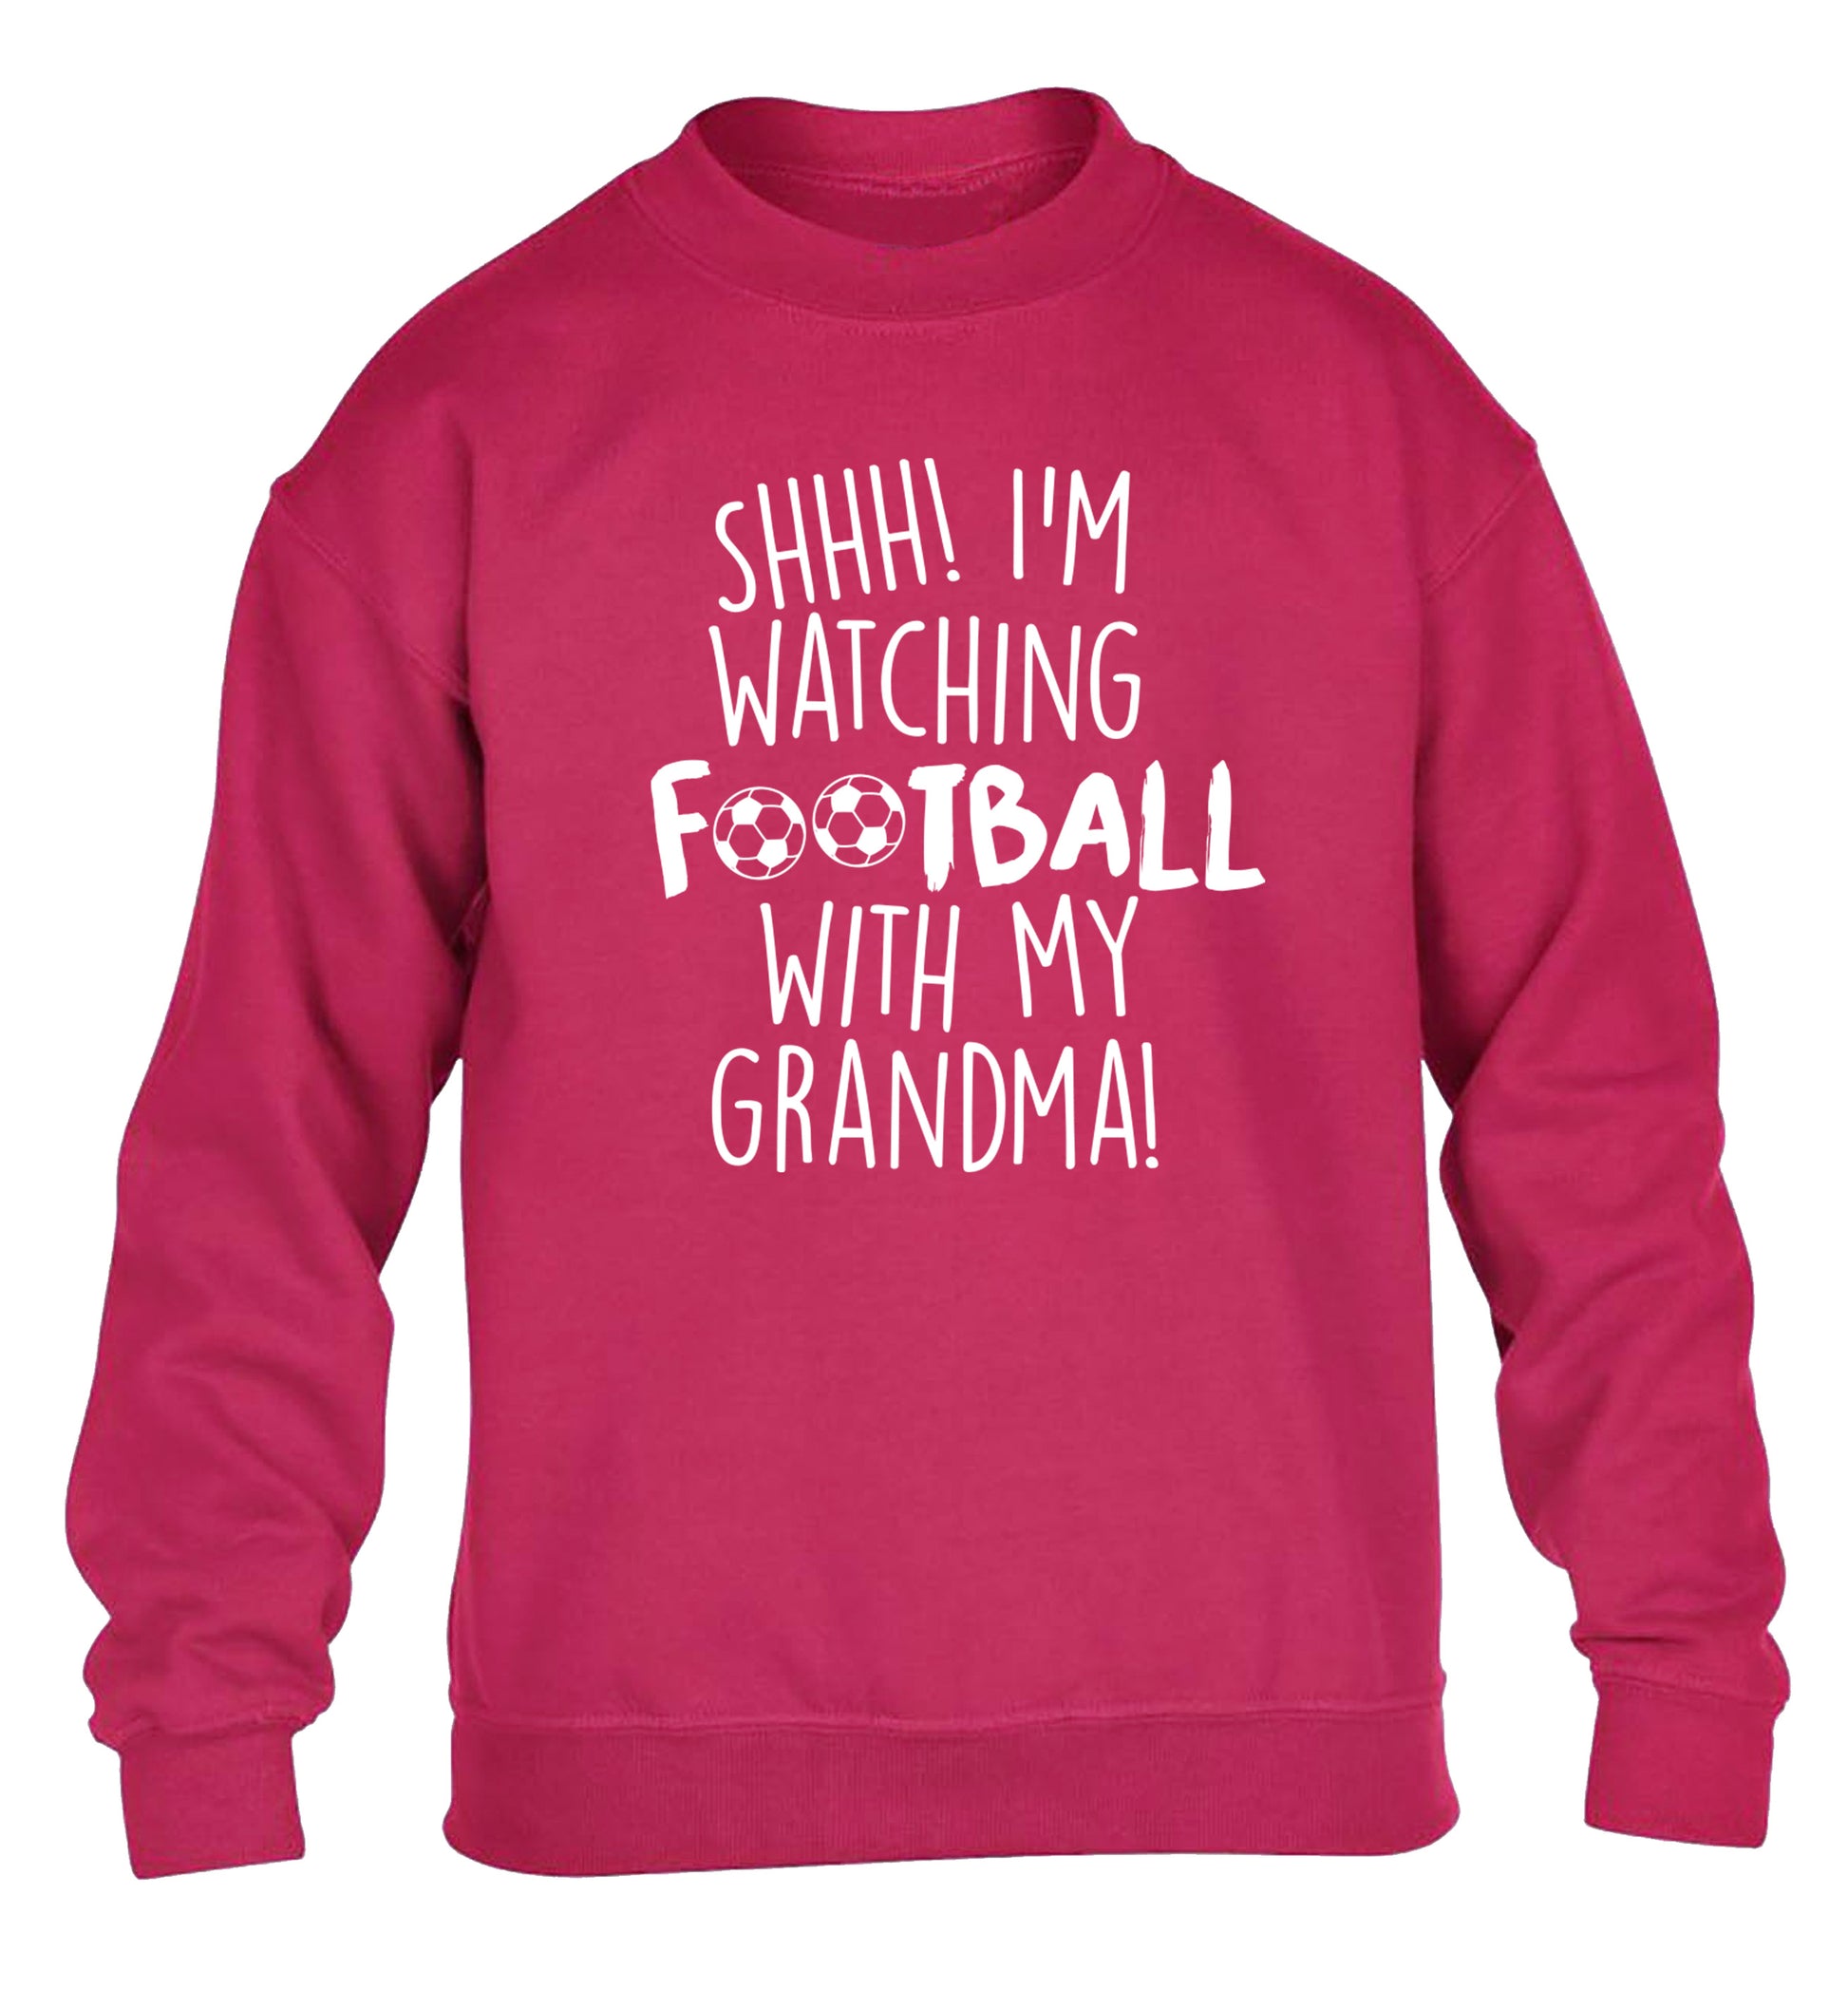 Shhh I'm watching football with my grandma children's pink sweater 12-14 Years